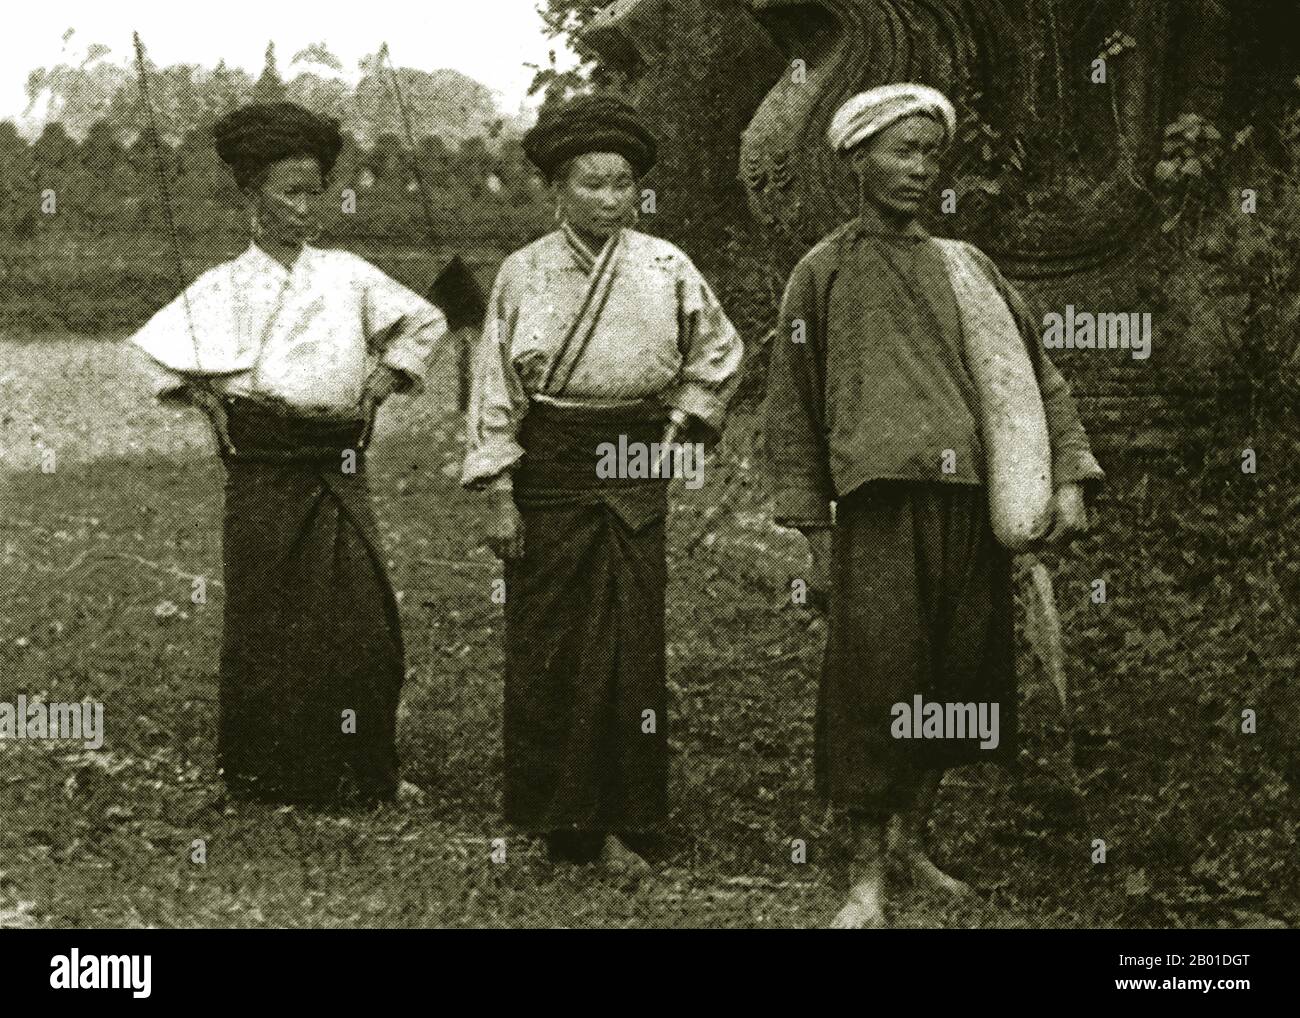 Birmanie : personnes Shan ethniques vêlées de façon traditionnelle à l'extérieur de Kengtung, c. 1892-1896. Situé dans le nord-est du pays, l’État Shan couvre un quart de la masse terrestre de la Birmanie. Elle était traditionnellement séparée en principautés et se compose principalement de Shan, Burman Pa-O, Intha, Taungyo, Danu, Palaung et Kachin. Banque D'Images